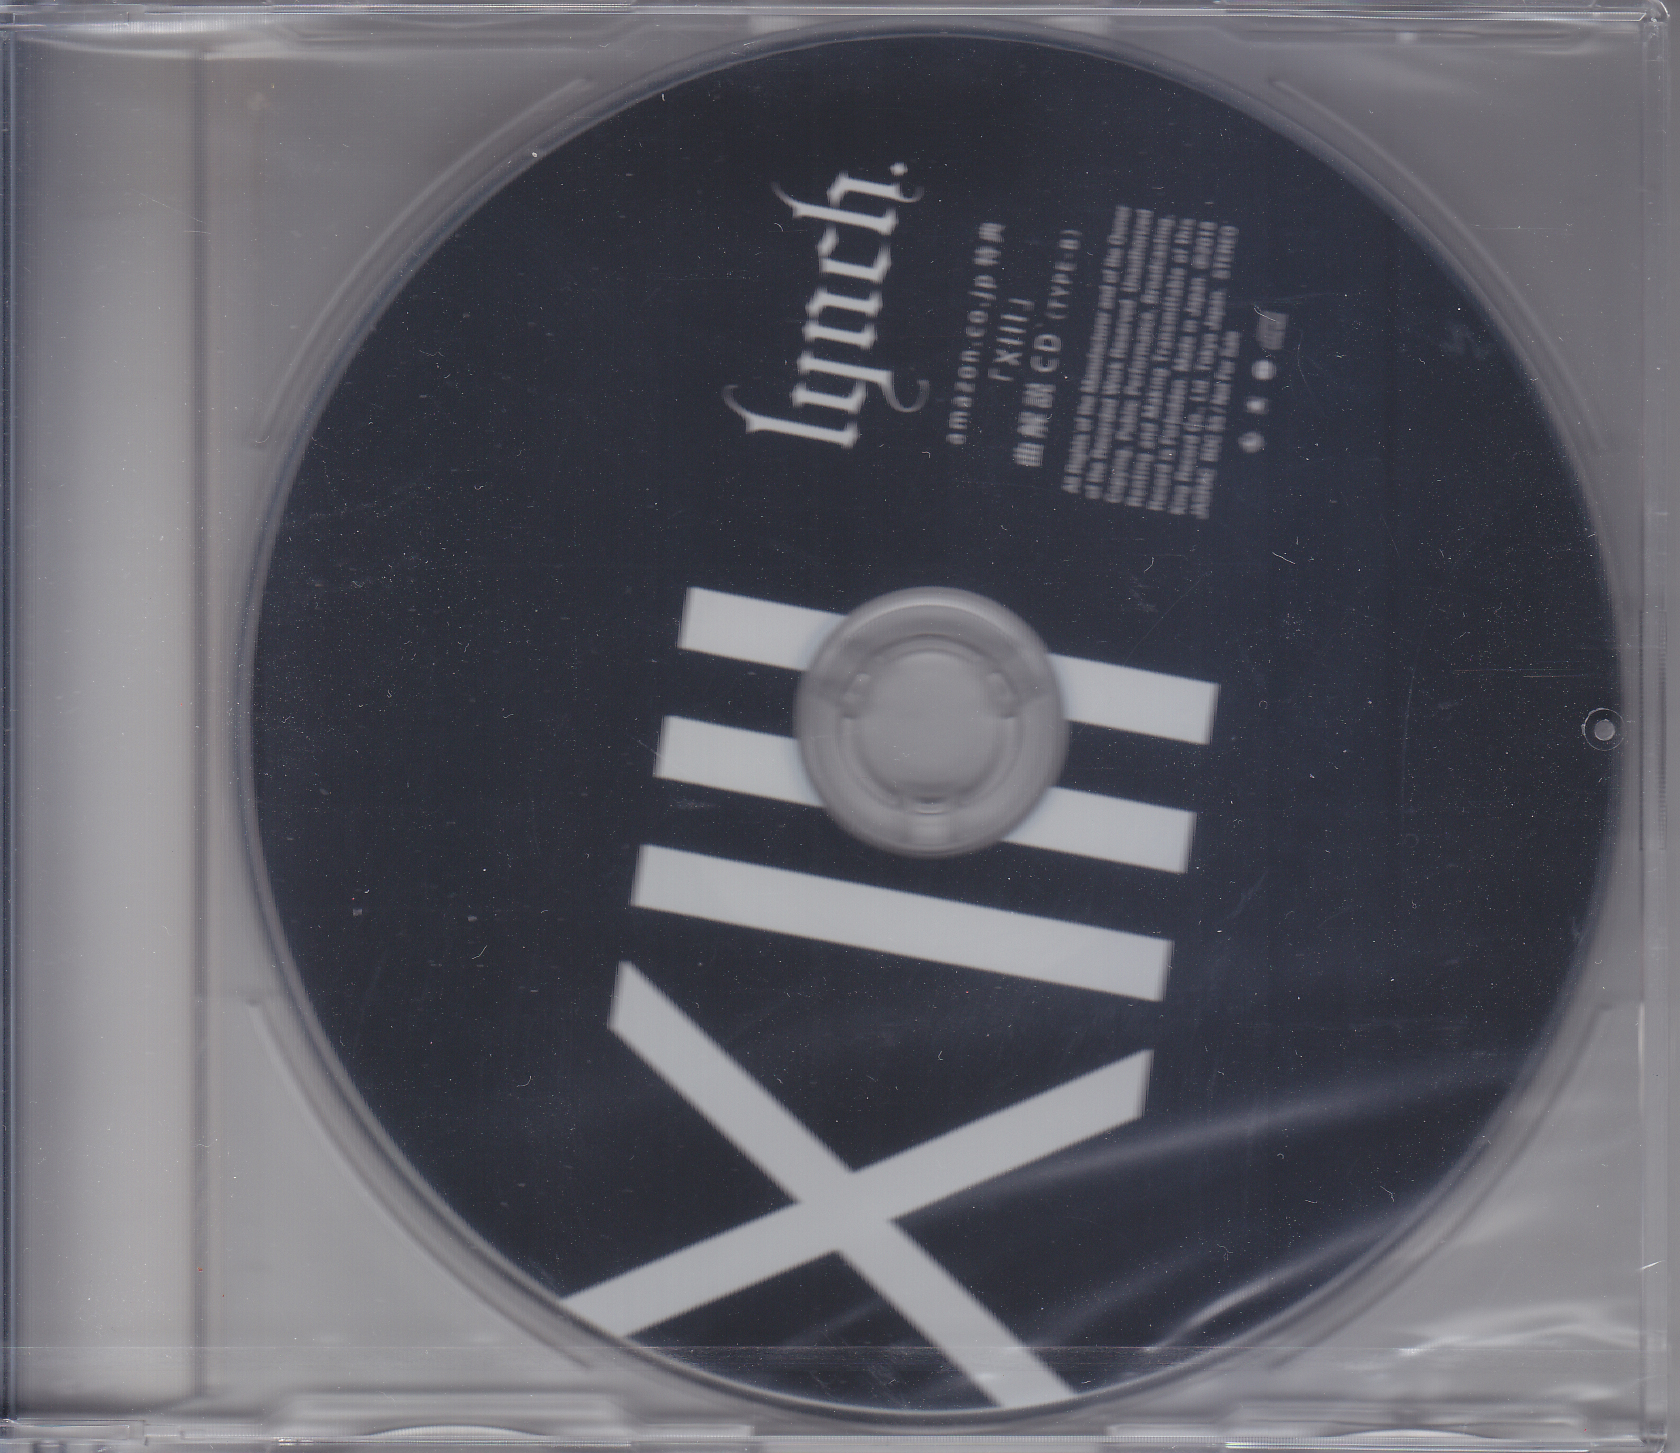 lynch． ( リンチ )  の CD 「XIII」曲解説CD（TYPE-B）